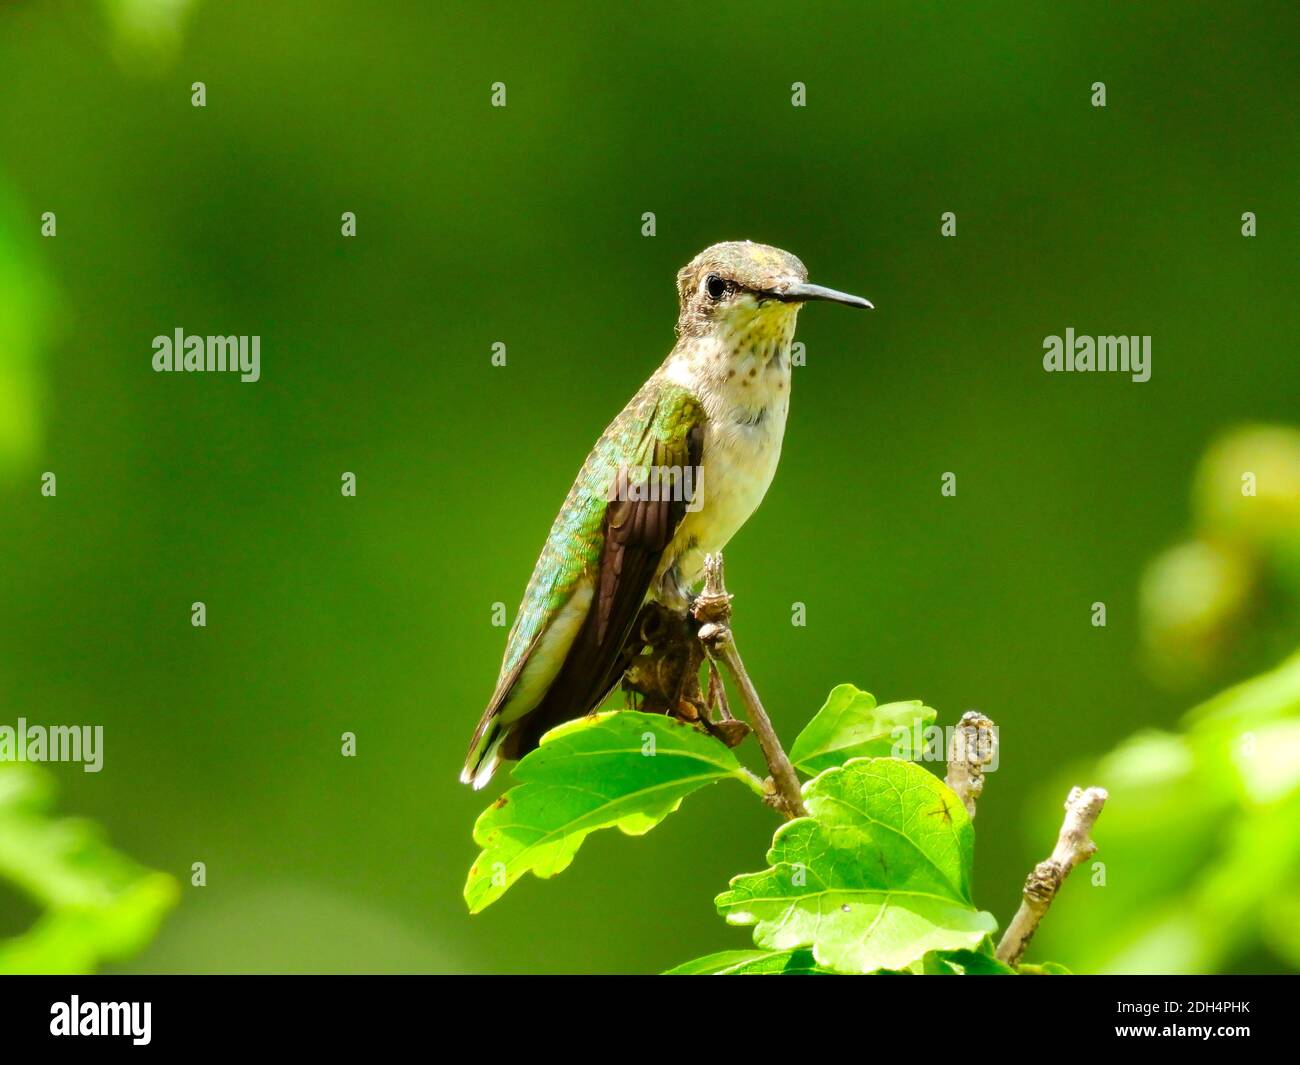 Junge Rubinkehlige Kolibri thront am Ende von Zweig mit Ein paar grüne Blätter mit jugendlicher Kolibri, die rote Federn wachsen Am Hals Stockfoto